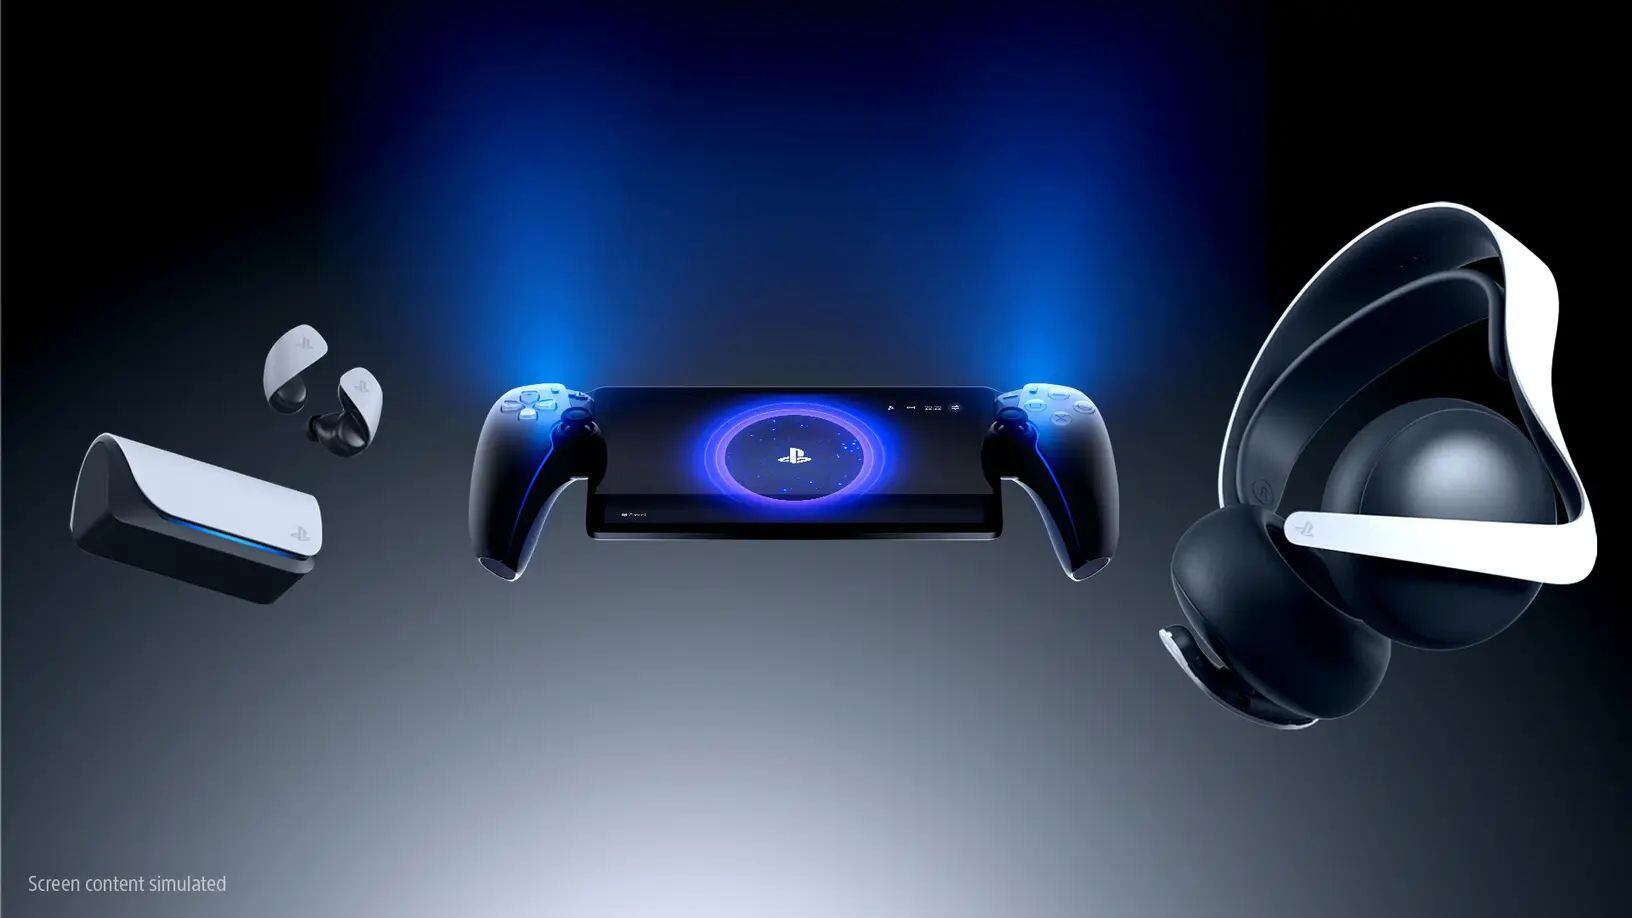 La consola ejecutará juegos a través de la función Remote Play de PS5. (PlayStation)